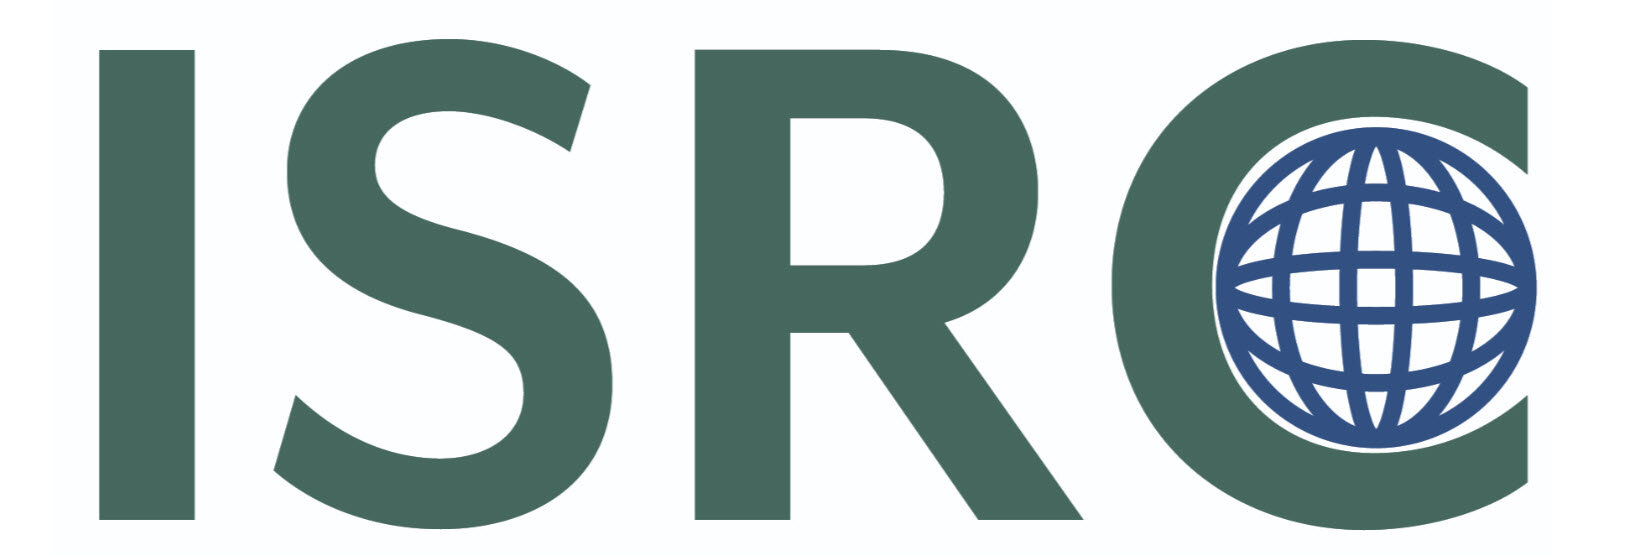 Mã ISRC - mua lại mã